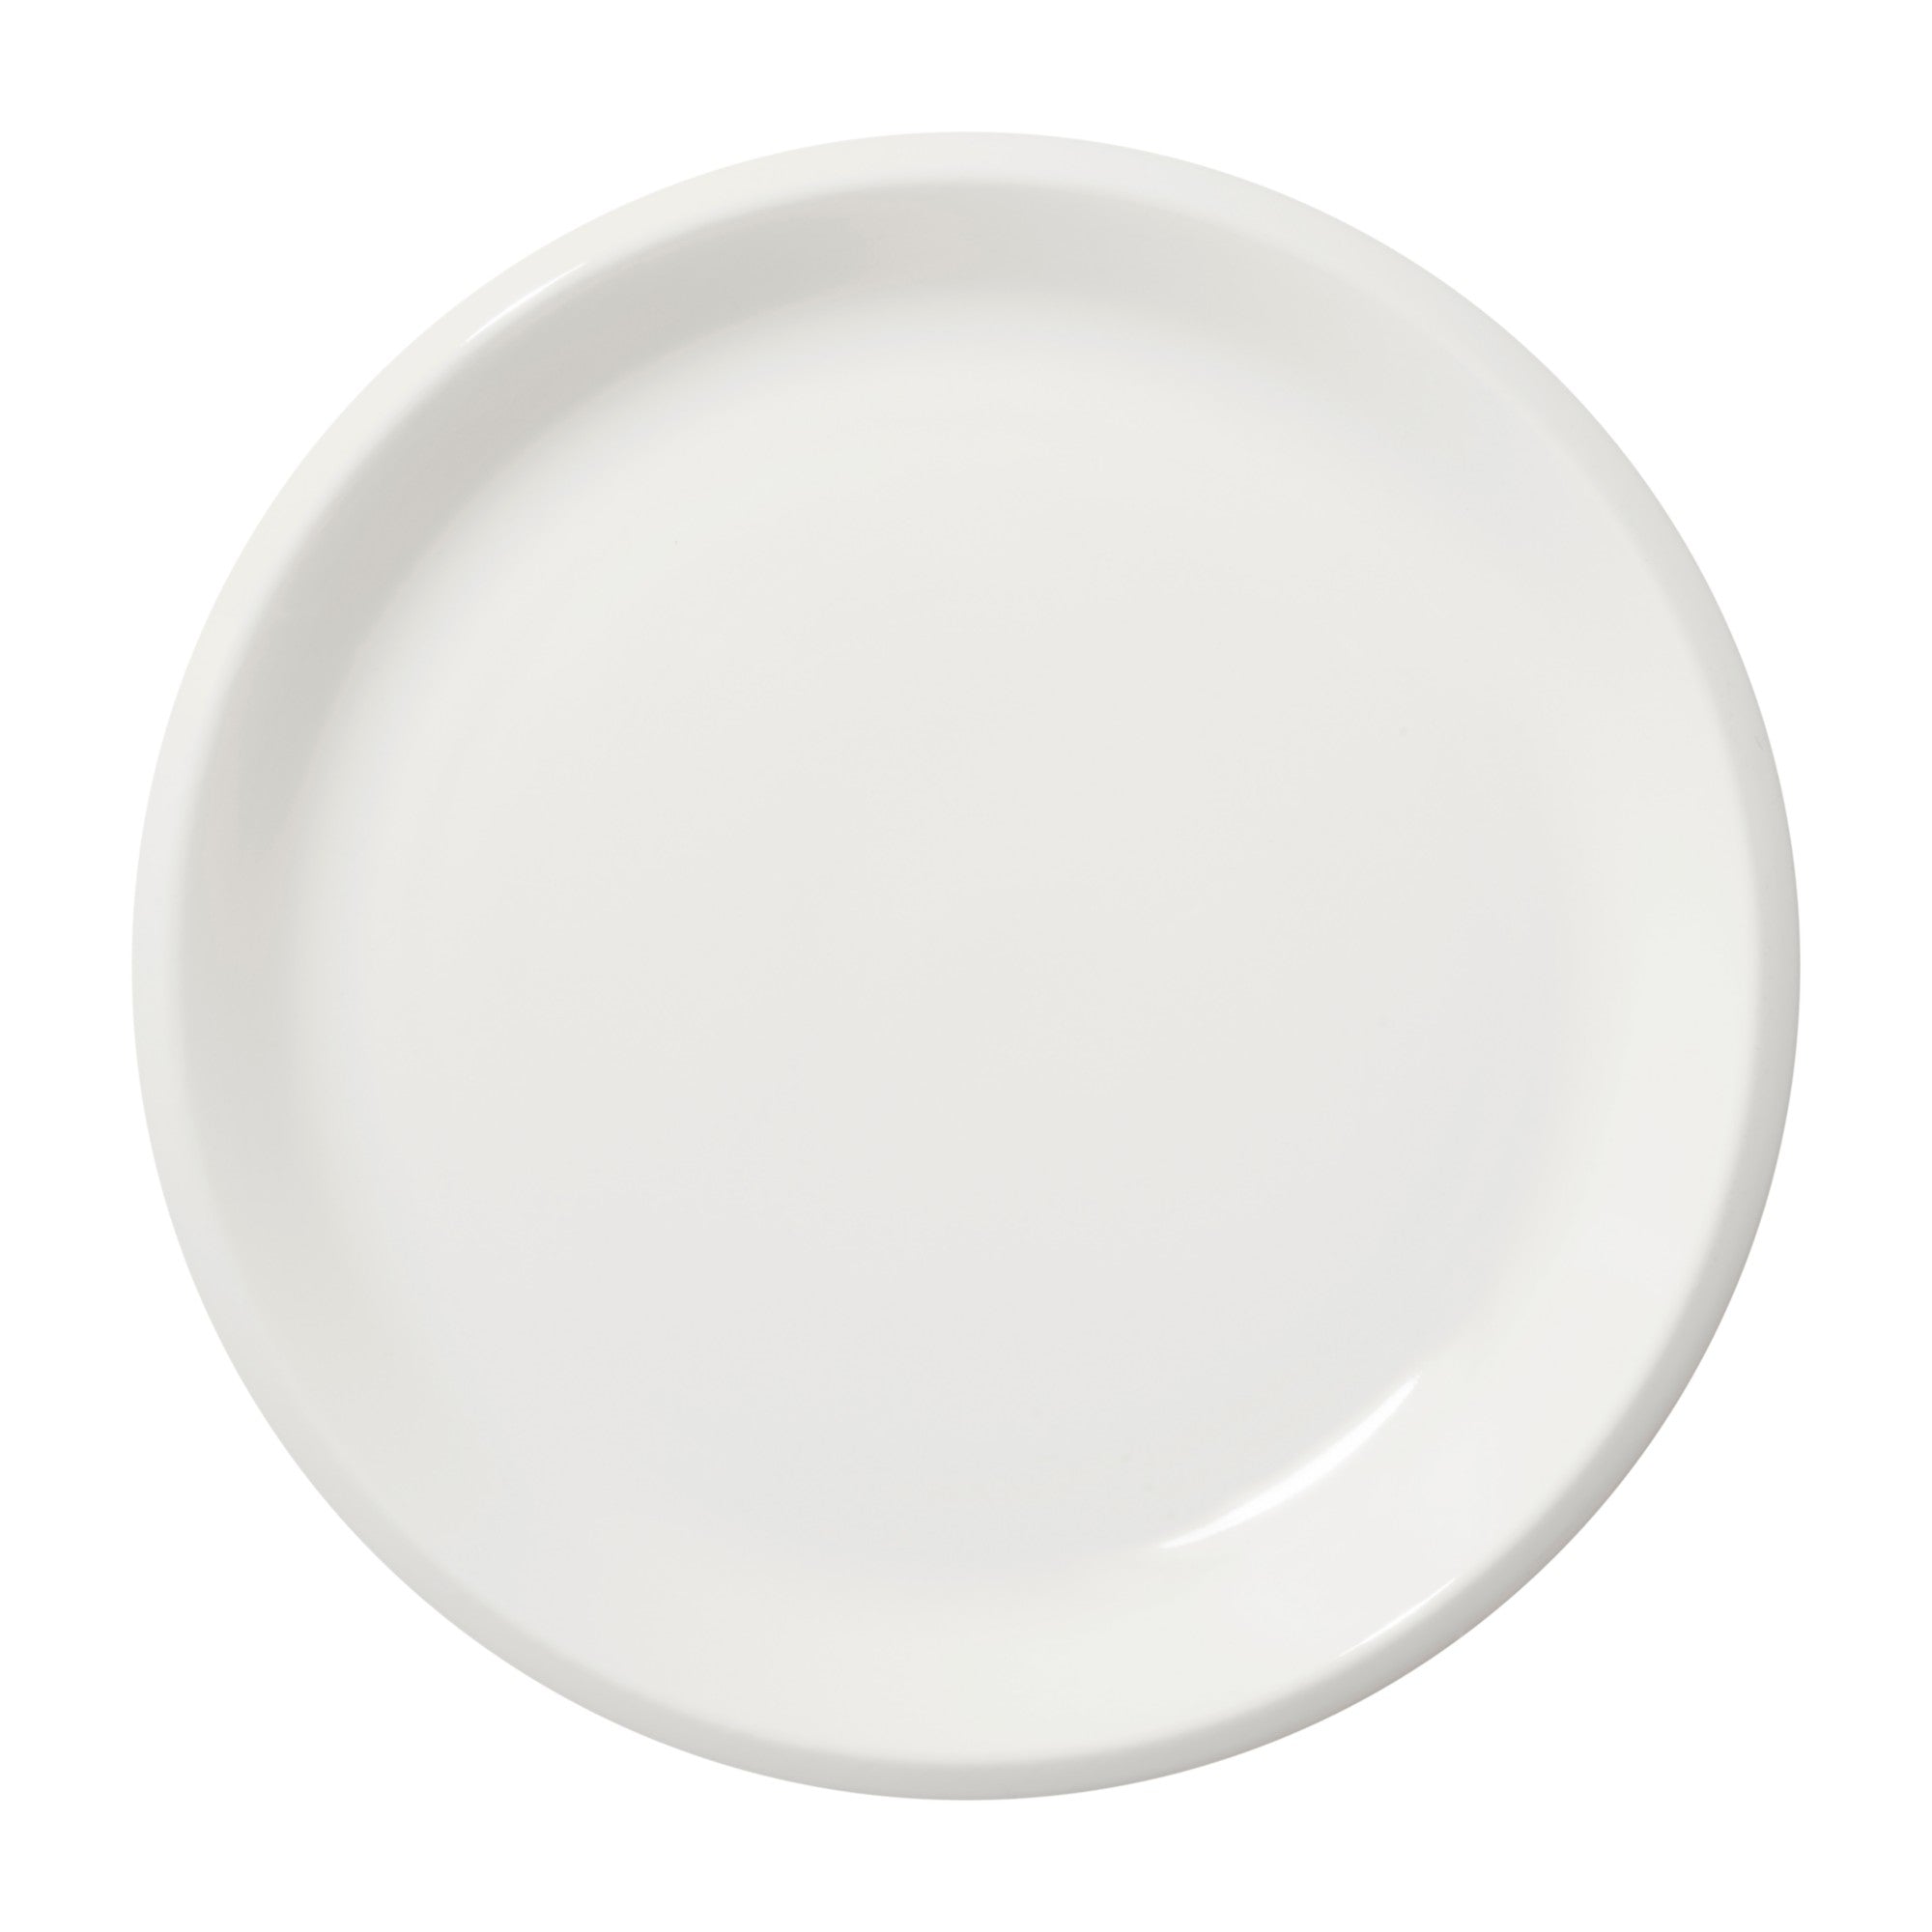 Raami Dinner plate 10.5"